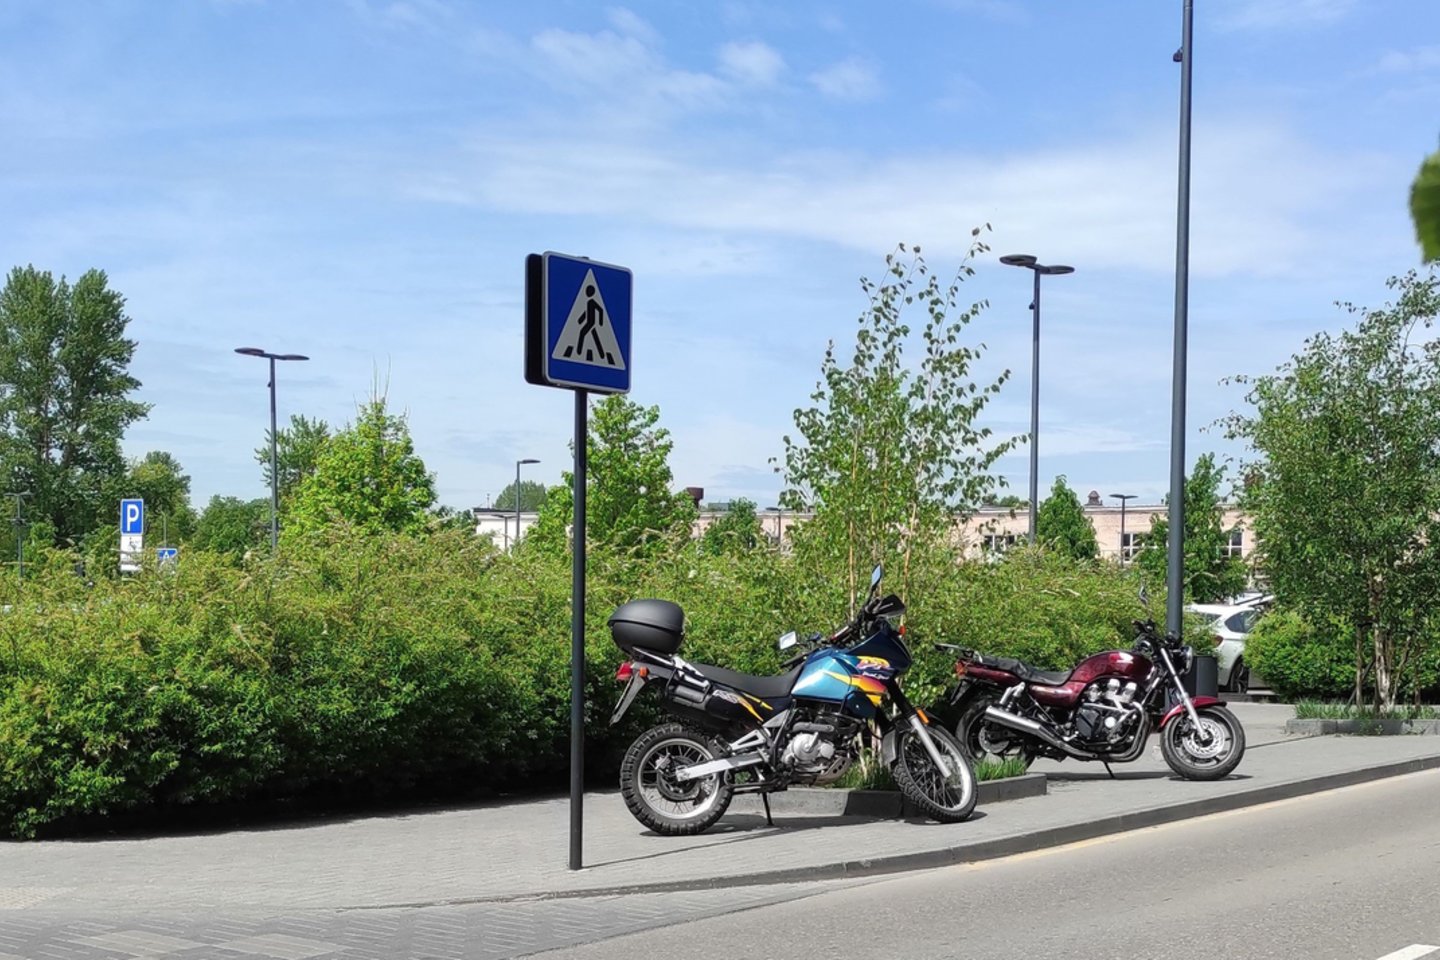  Motociklų parkavimas Lietuvoje.<br> Skaitytojų nuotr.